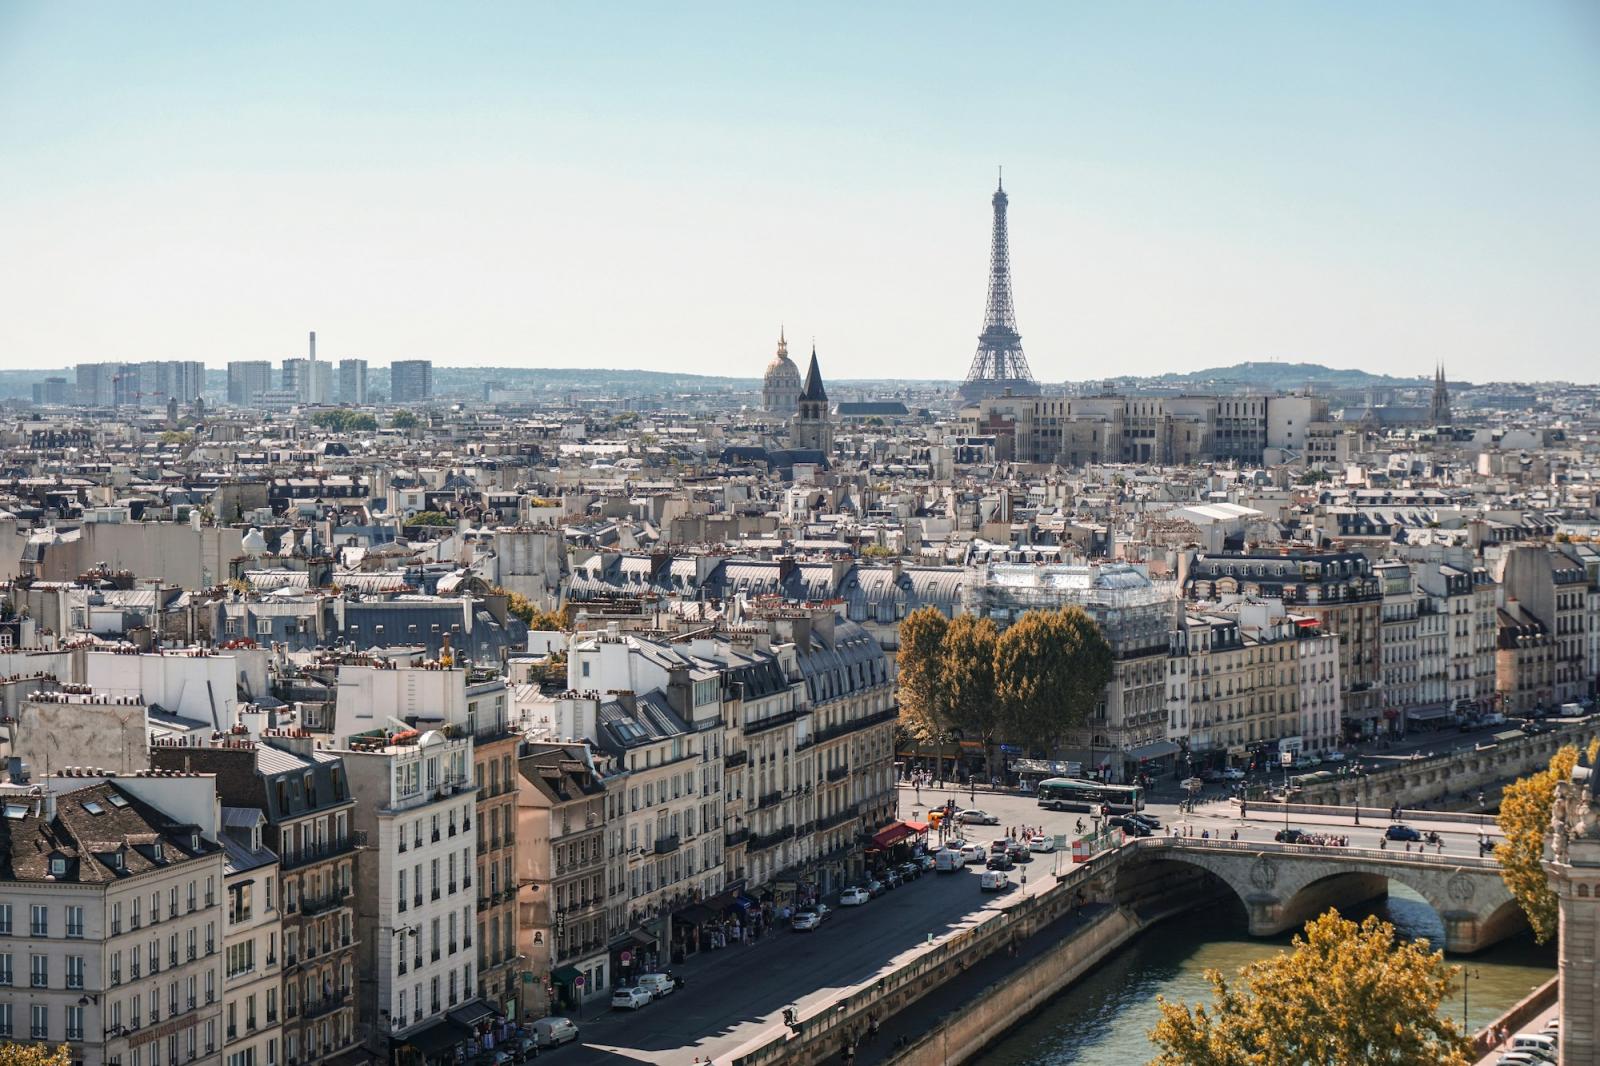 Perché questa strada parigina è considerata una delle strade più belle del mondo?